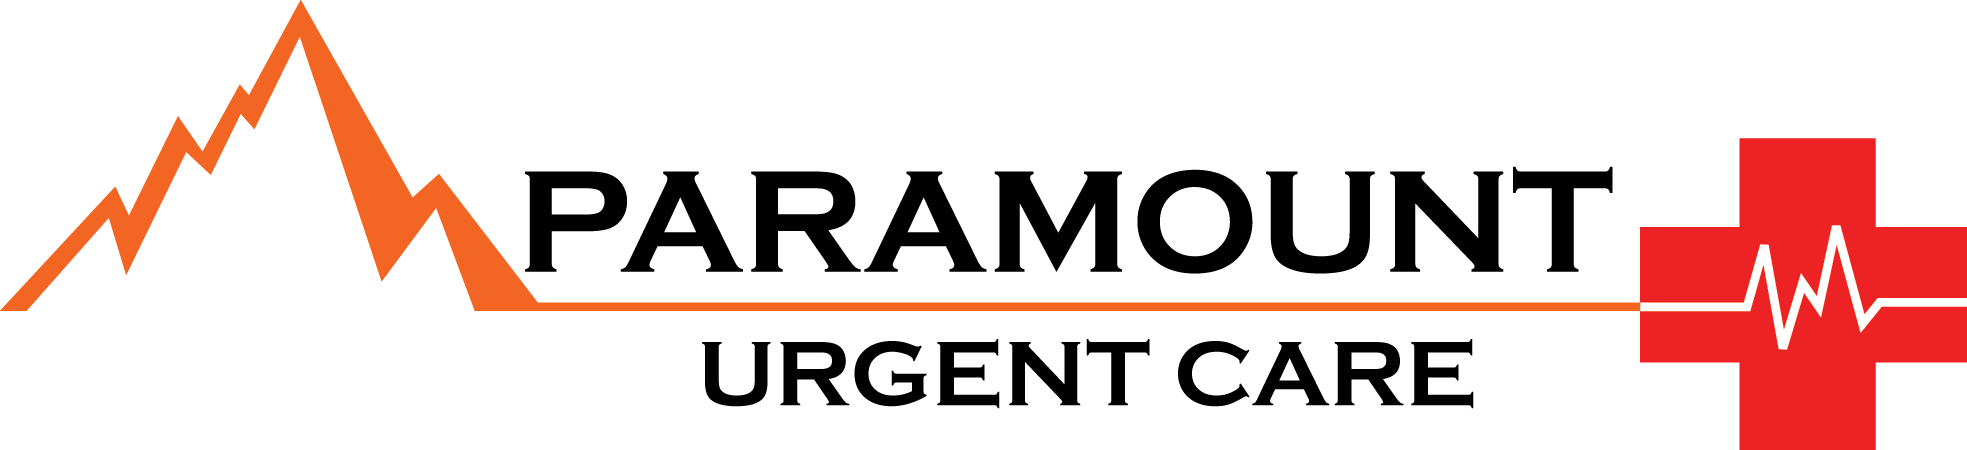 Paramount Urgent Care logo